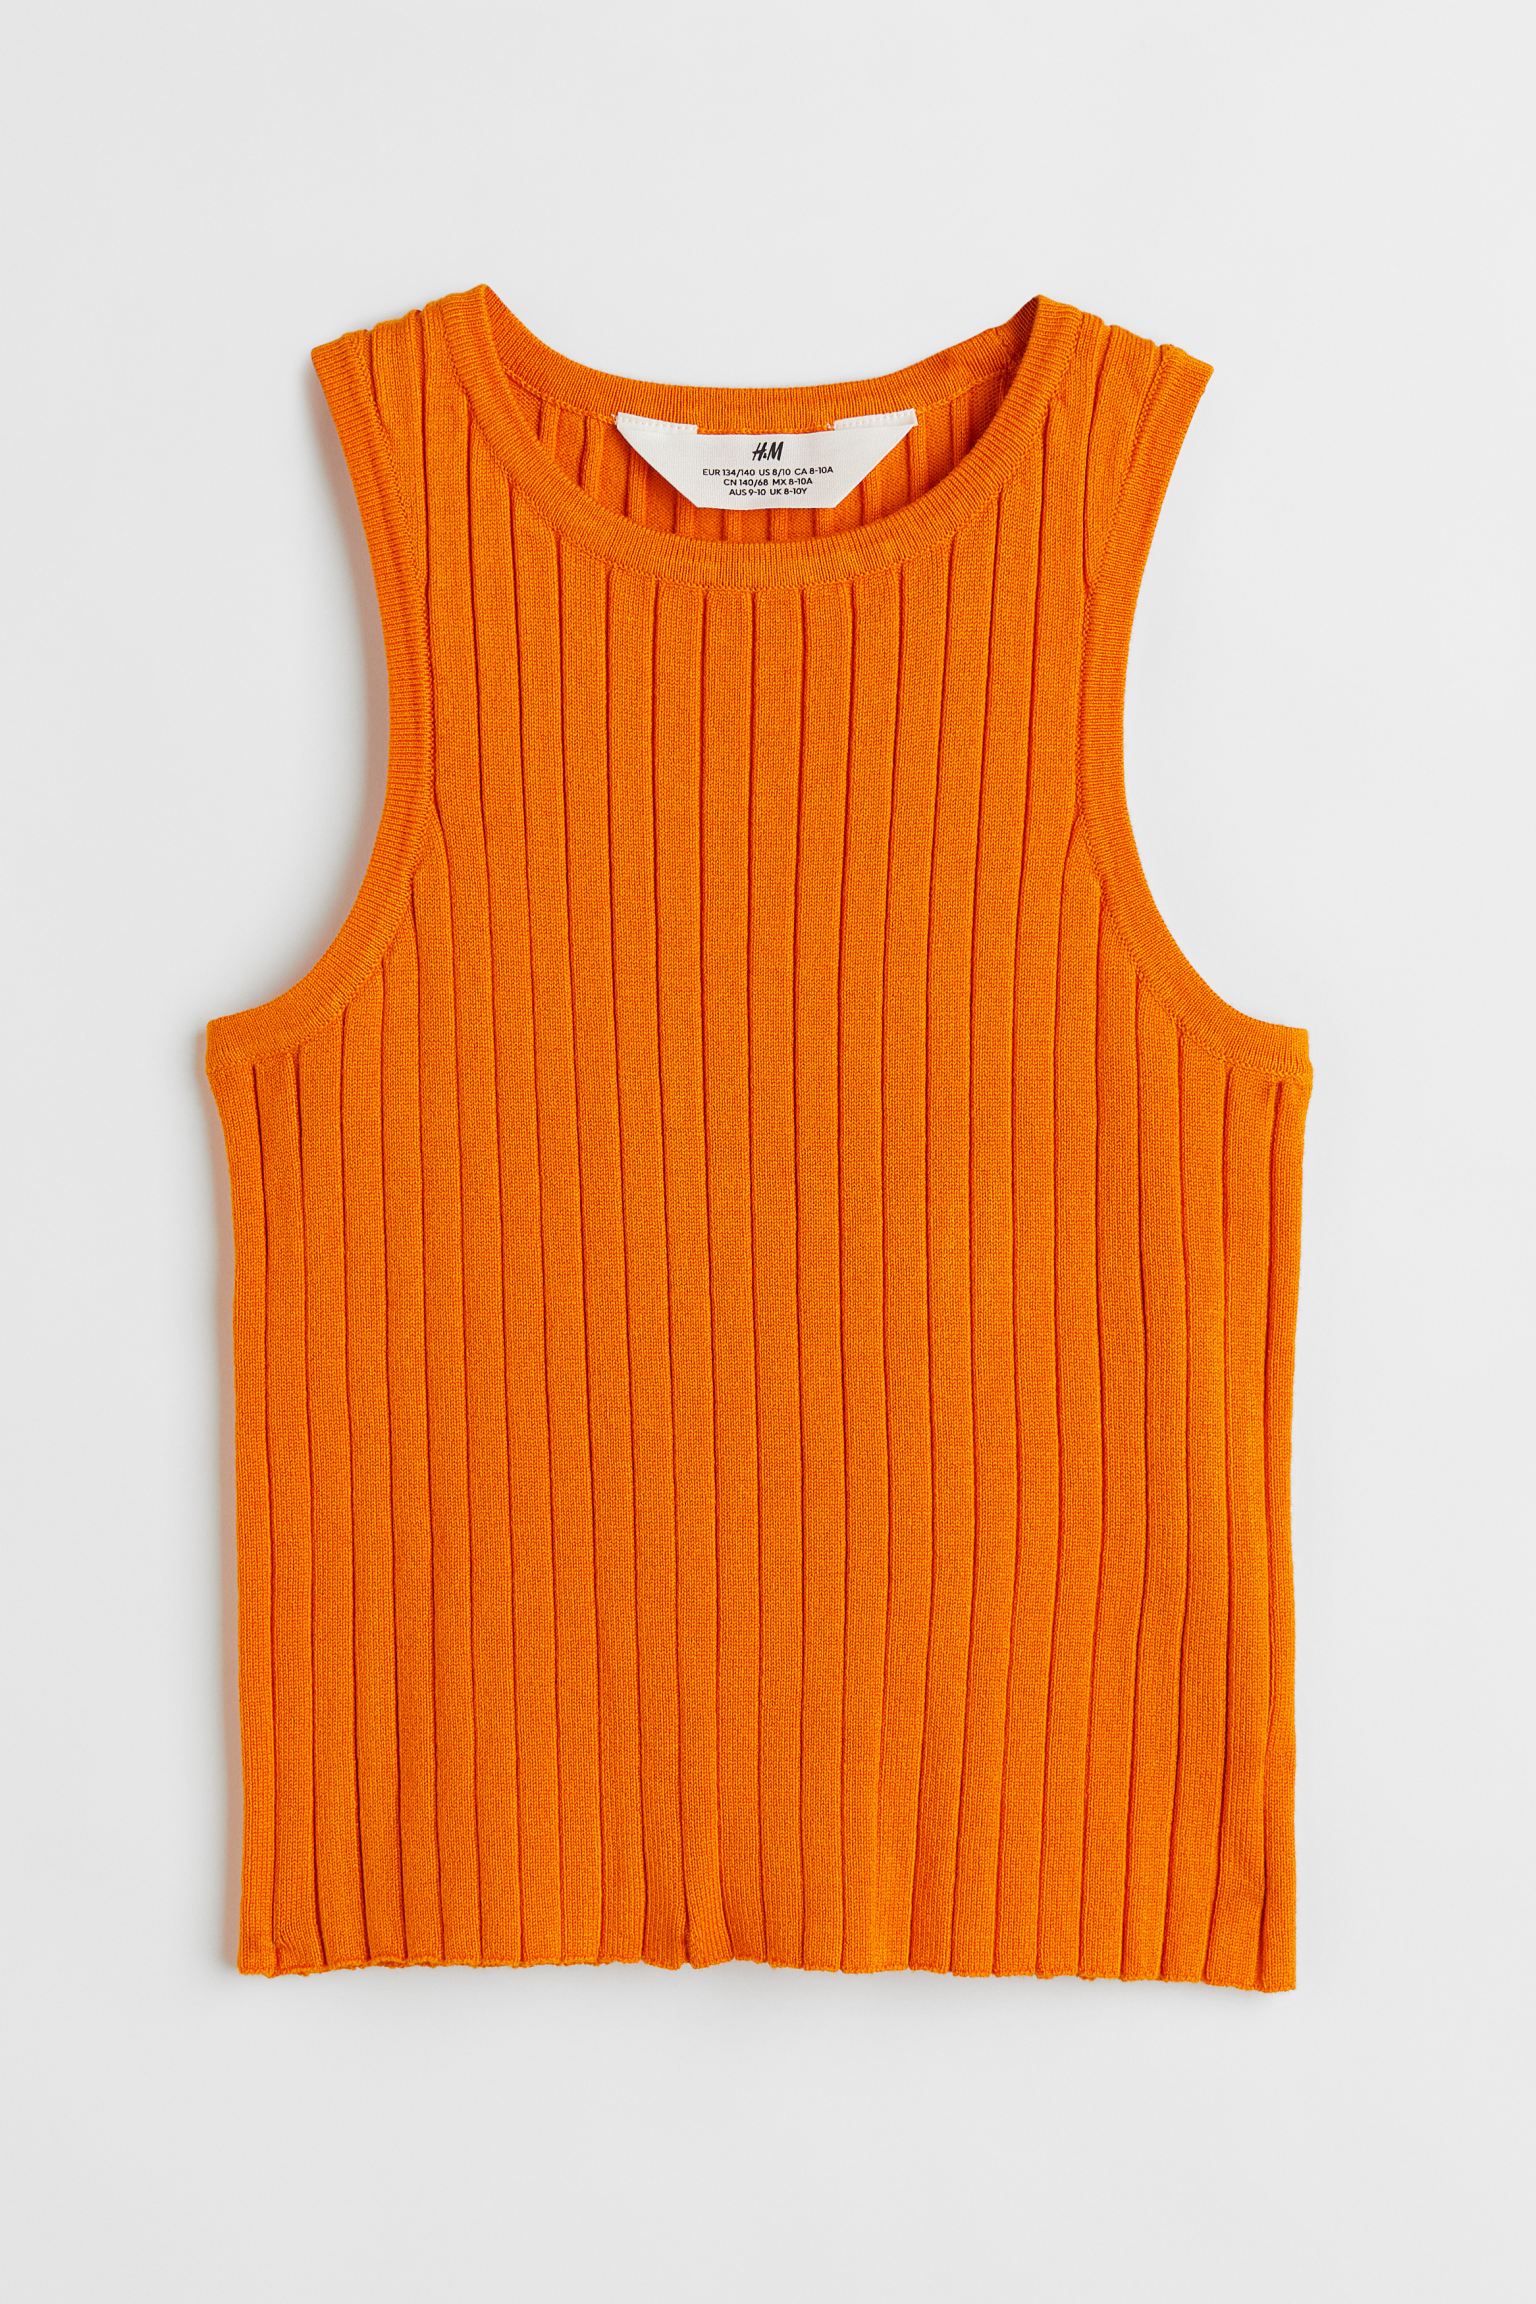 Майка H&M для девочек, оранжевый-005, размер 134/140, 1028246005 майка детская batik 034 нбо22 белый размер 140